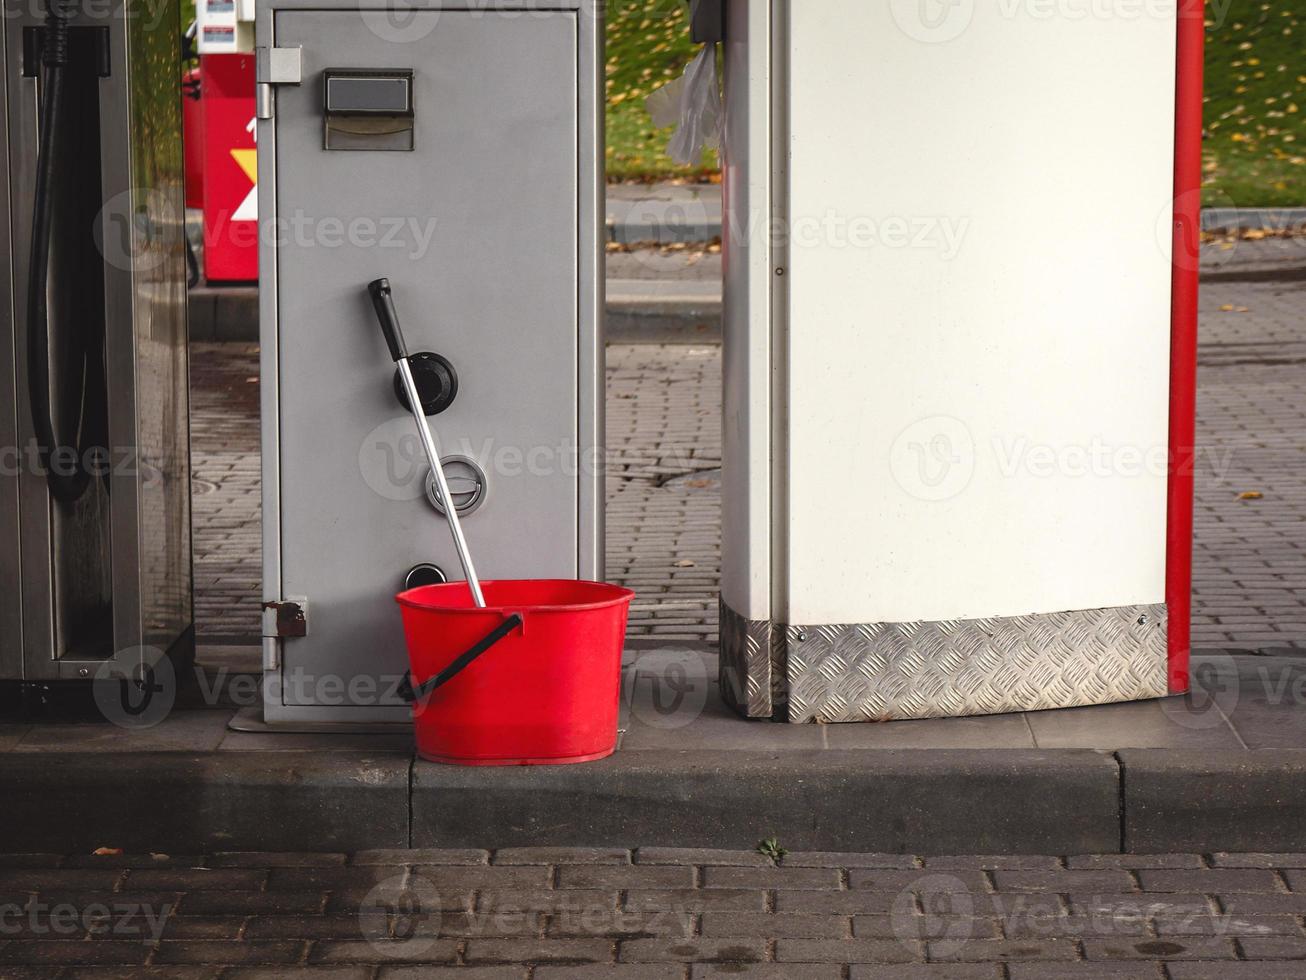 balde de plástico vermelho com esfregão no posto de gasolina foto